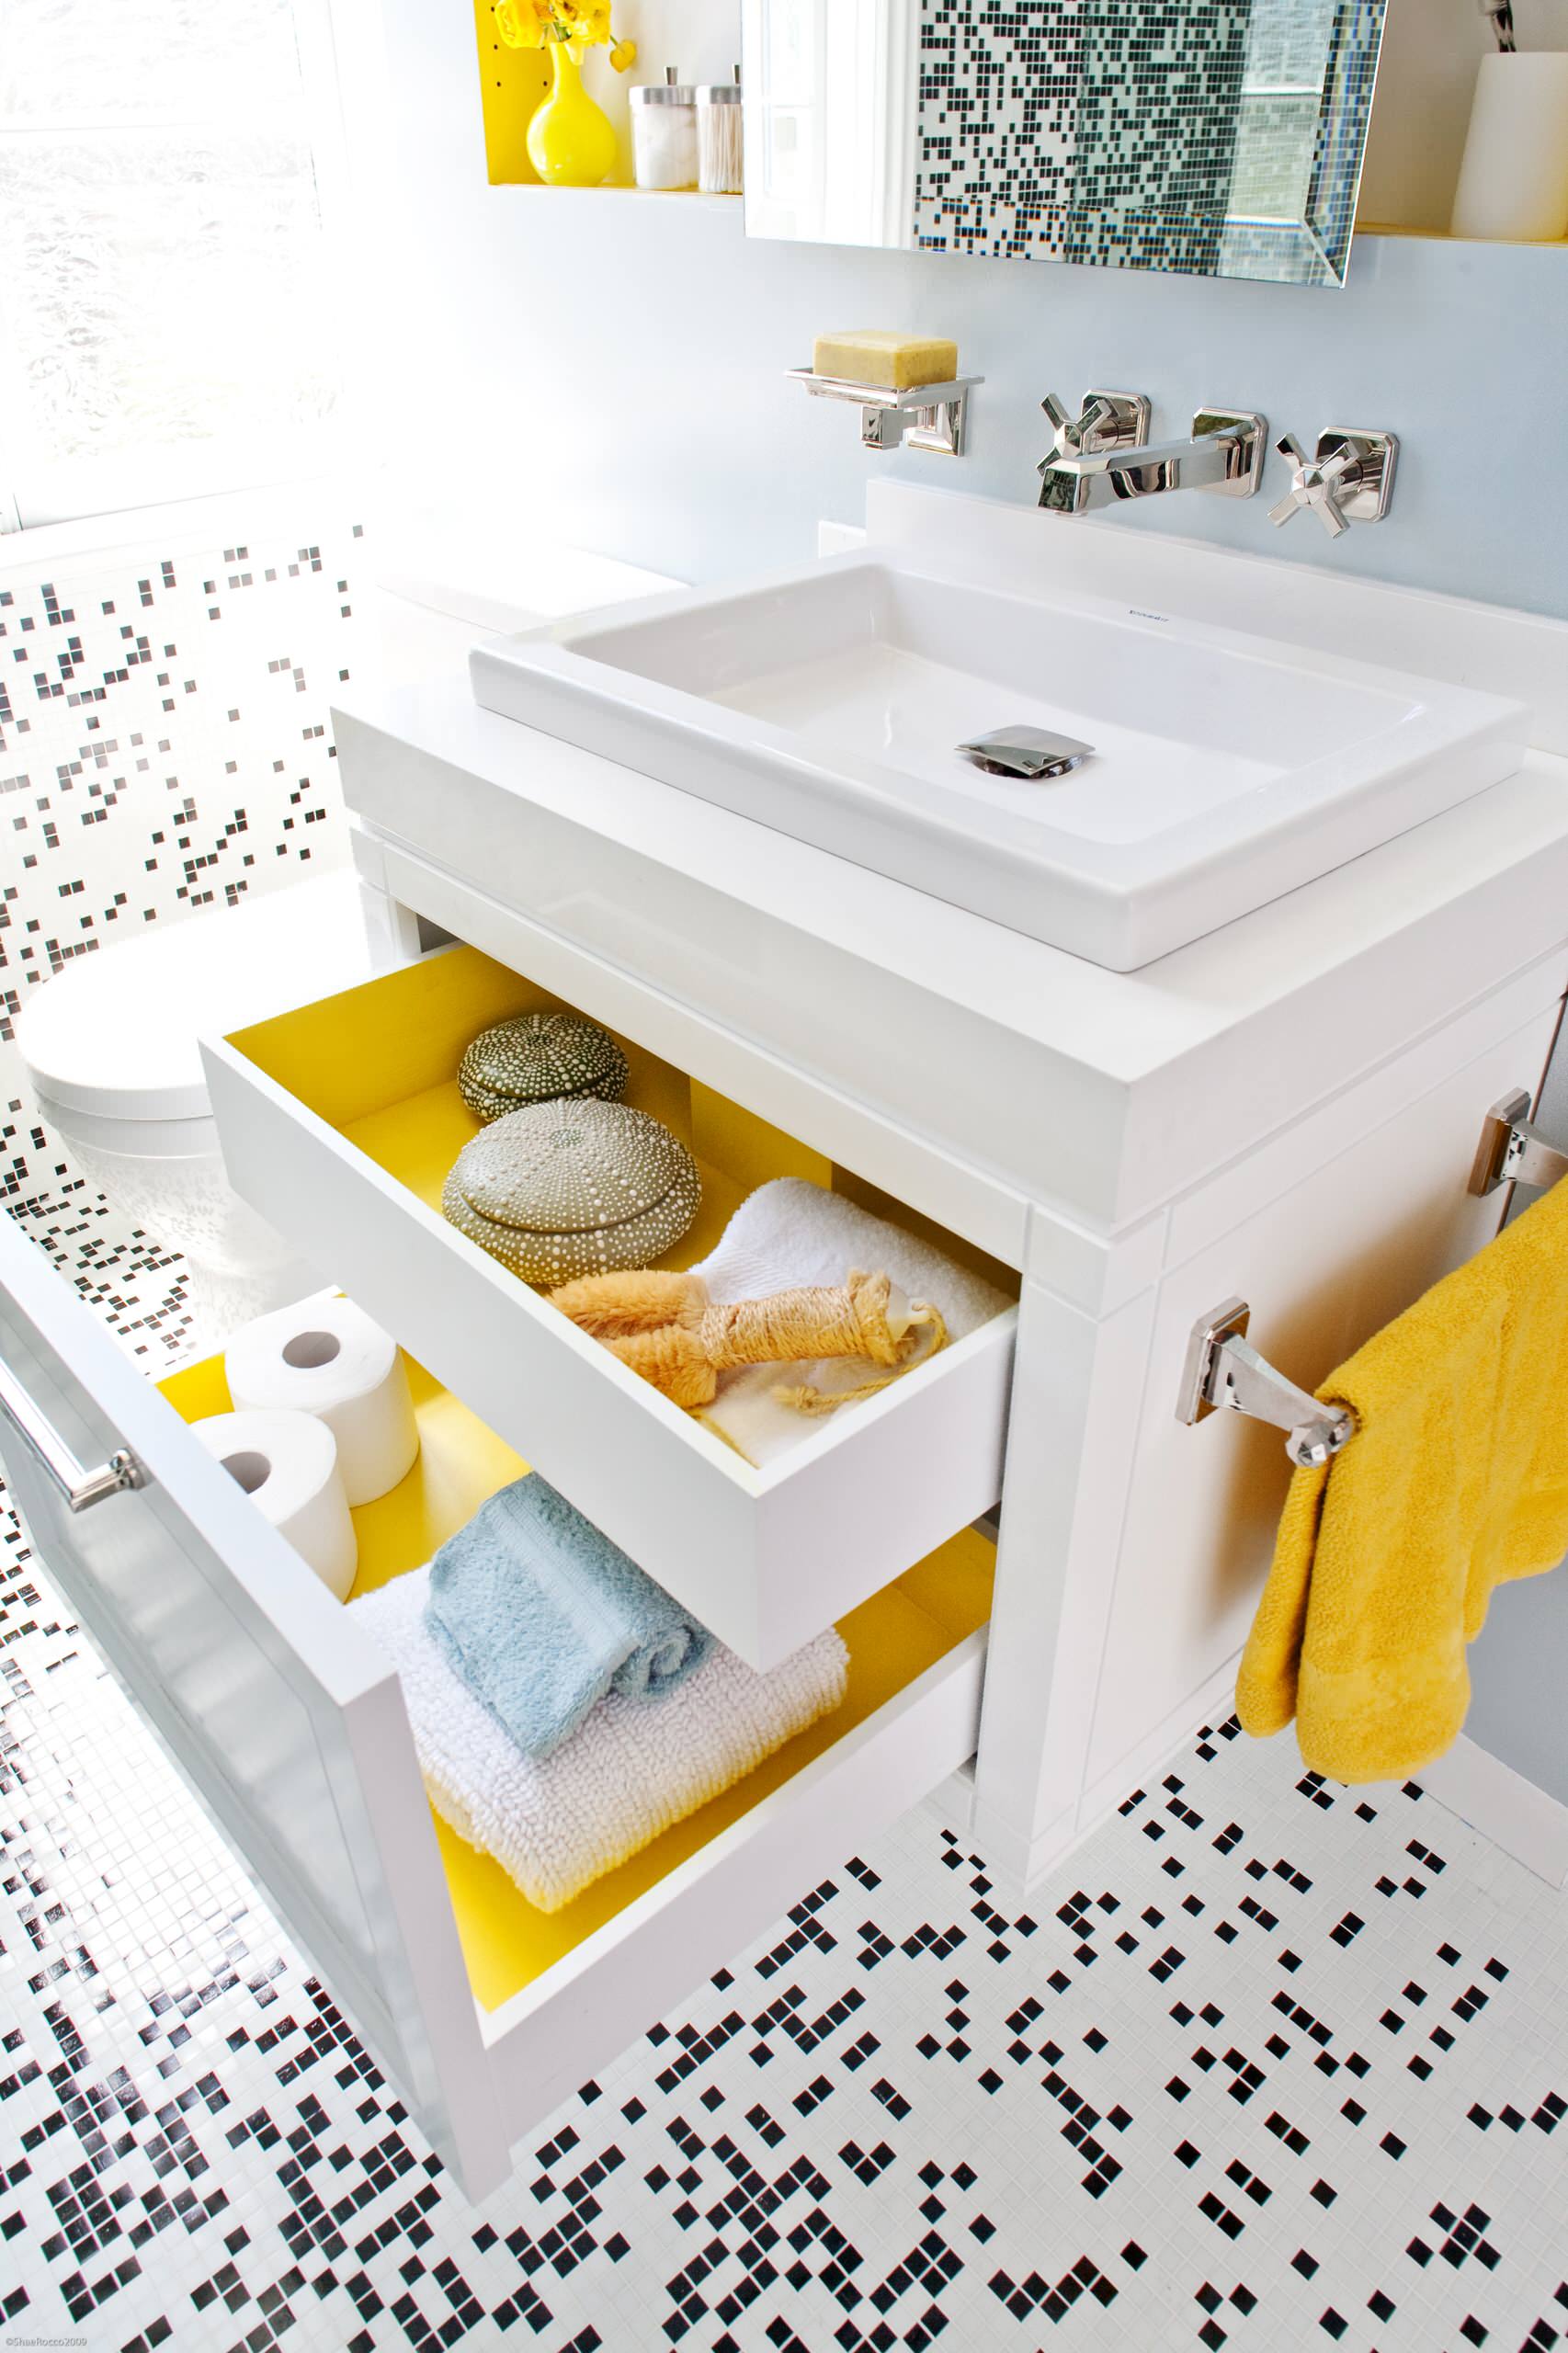 10 Top Design Tips For An Ergonomic Bathroom Houzz Au